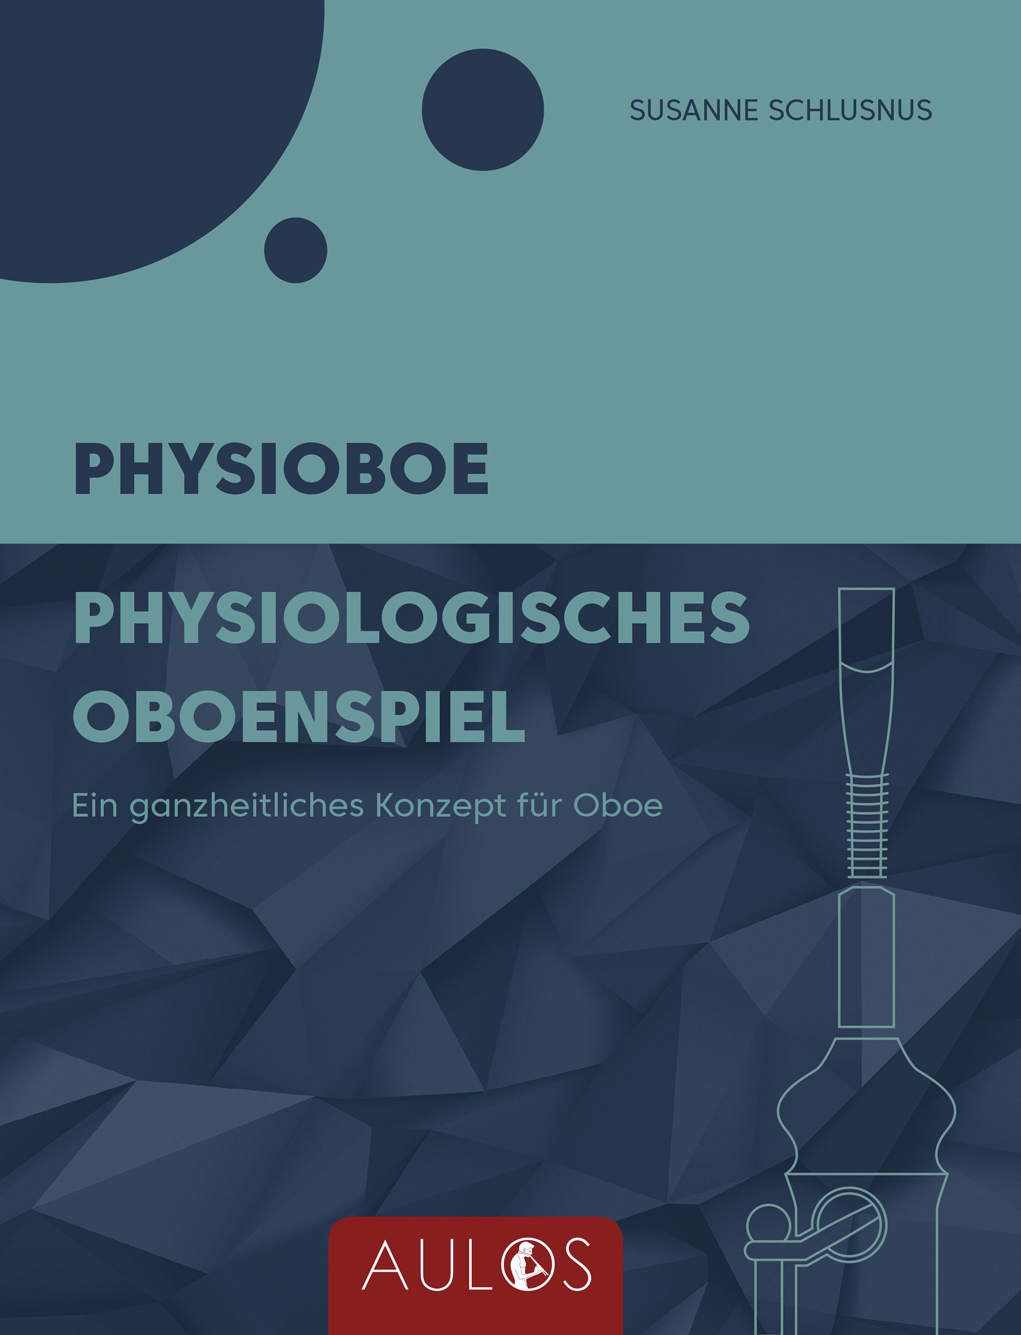 S. Schlusnus: Physioboe-Physiologisches<br>Oboenspiel - Fachbuch - ca. 400 Seiten